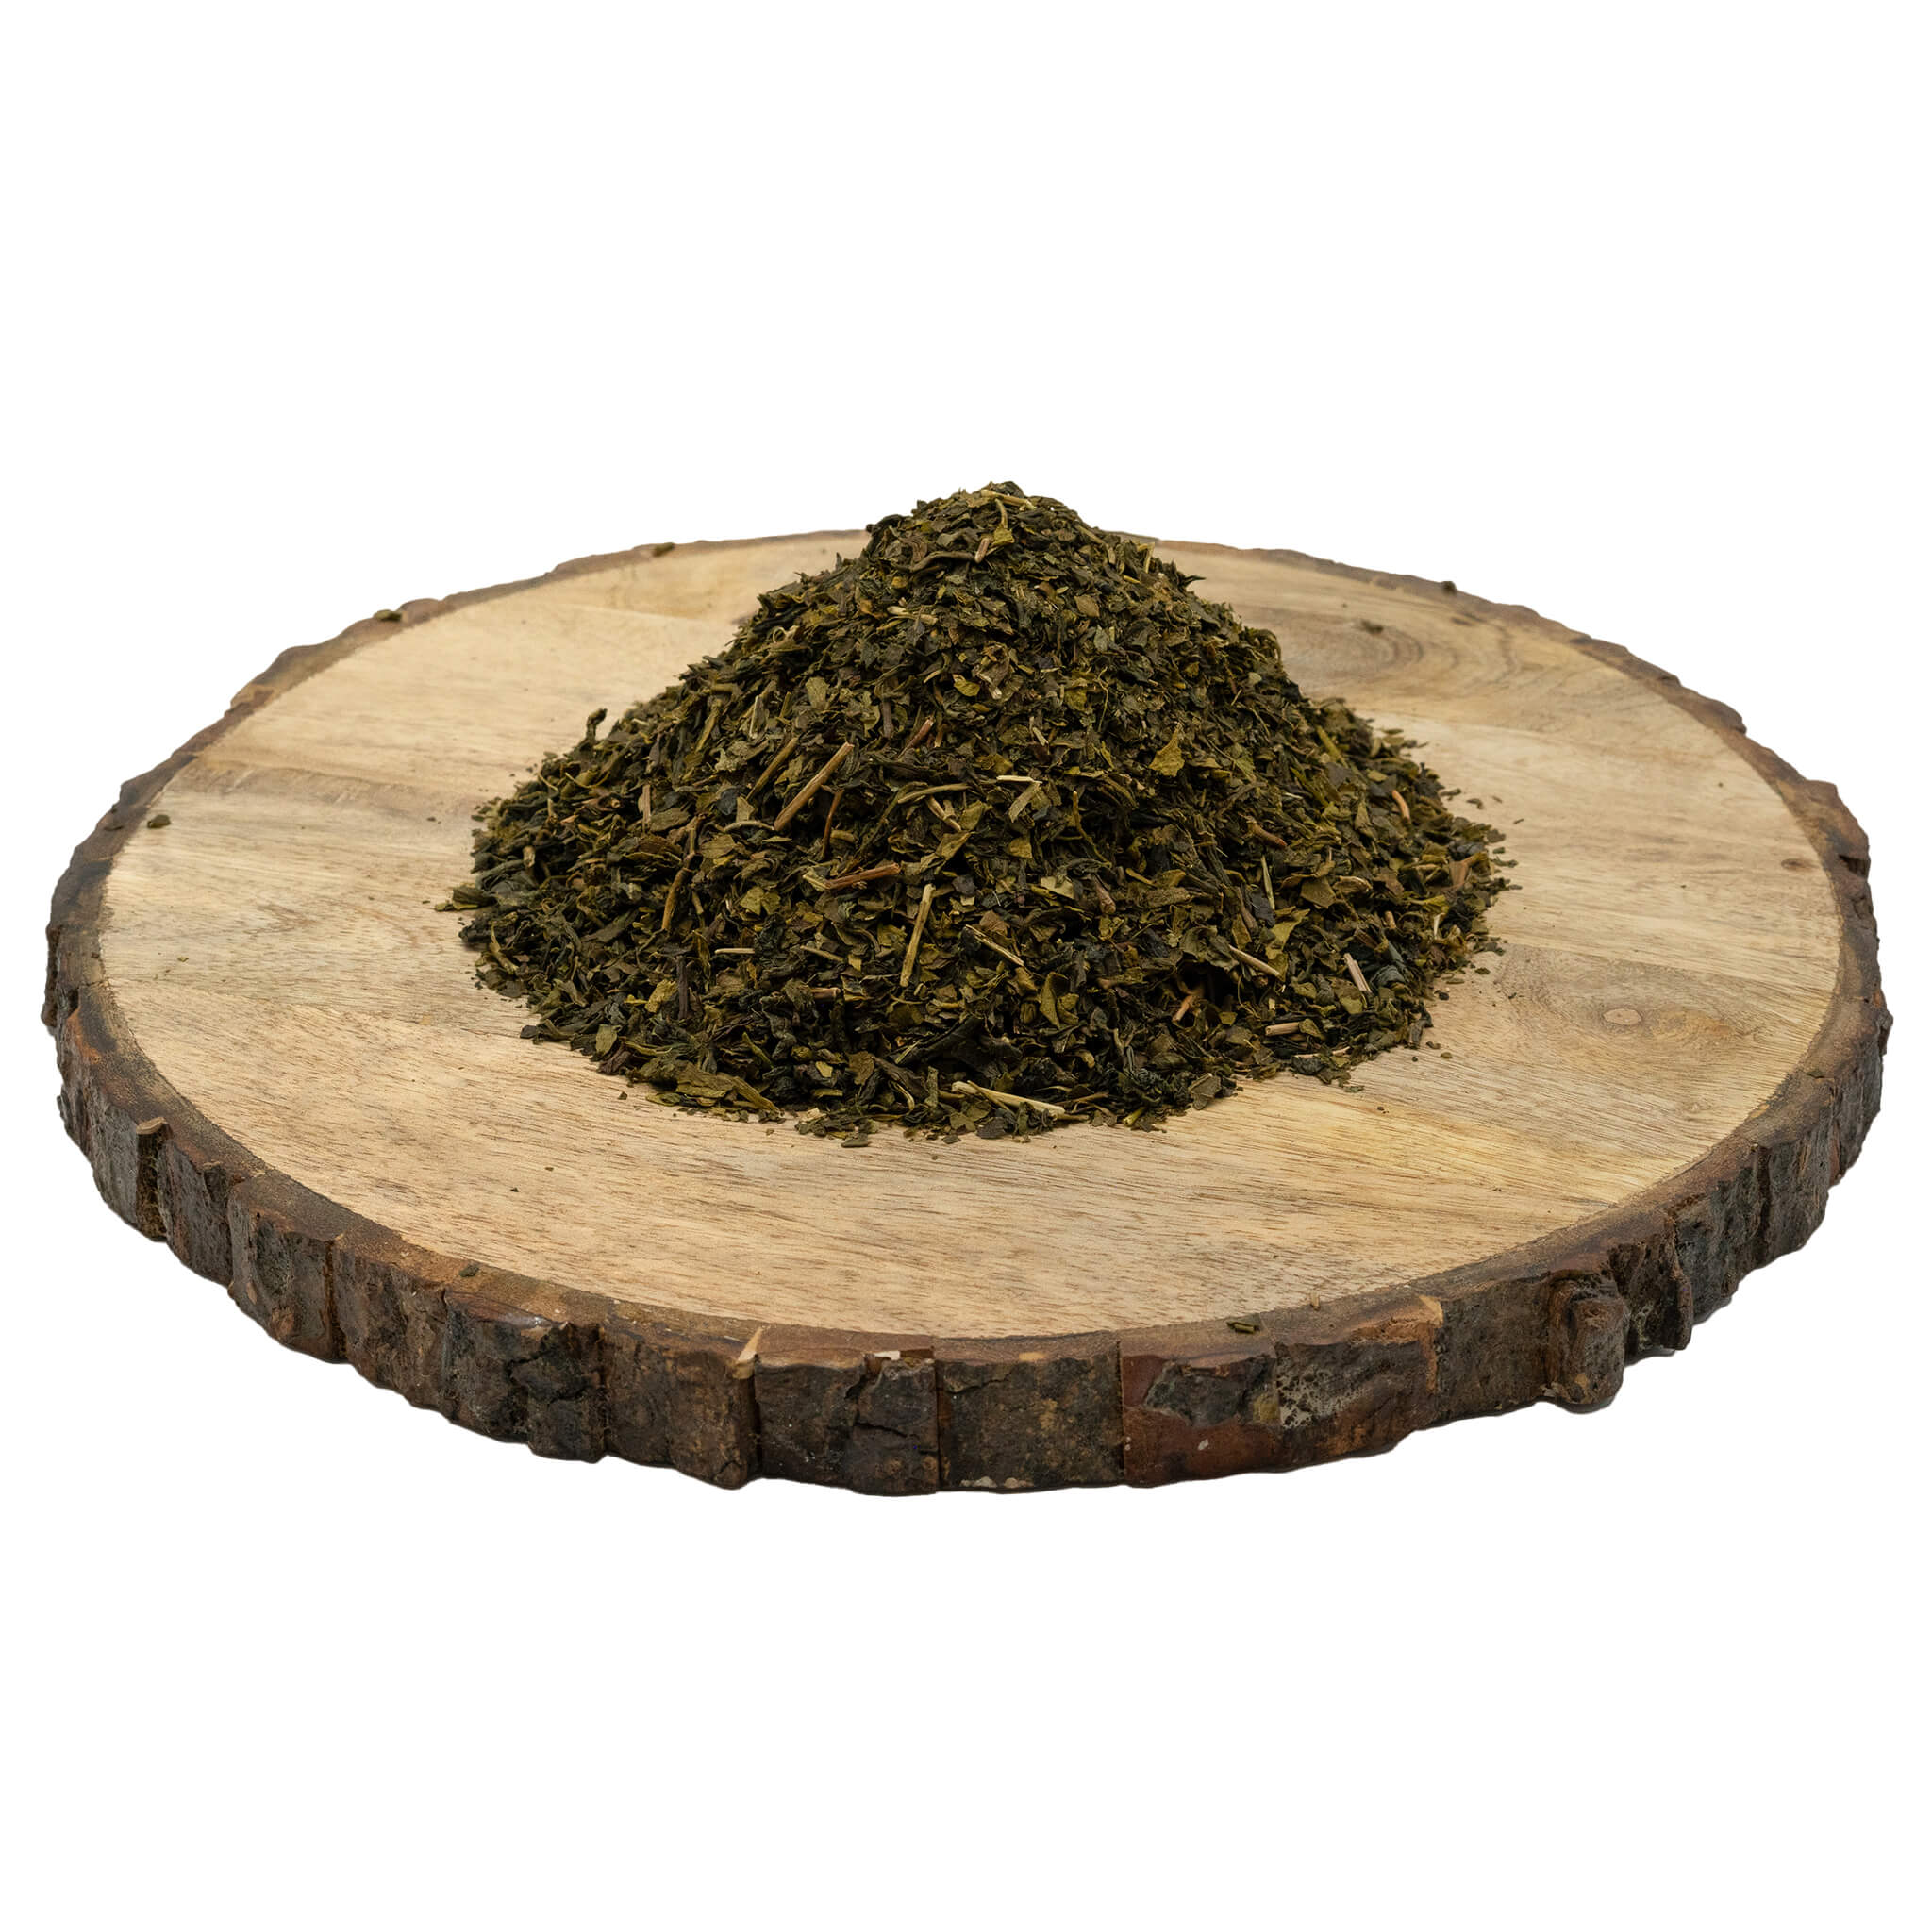 Zelený čaj sypaný - jasmínový, 600g